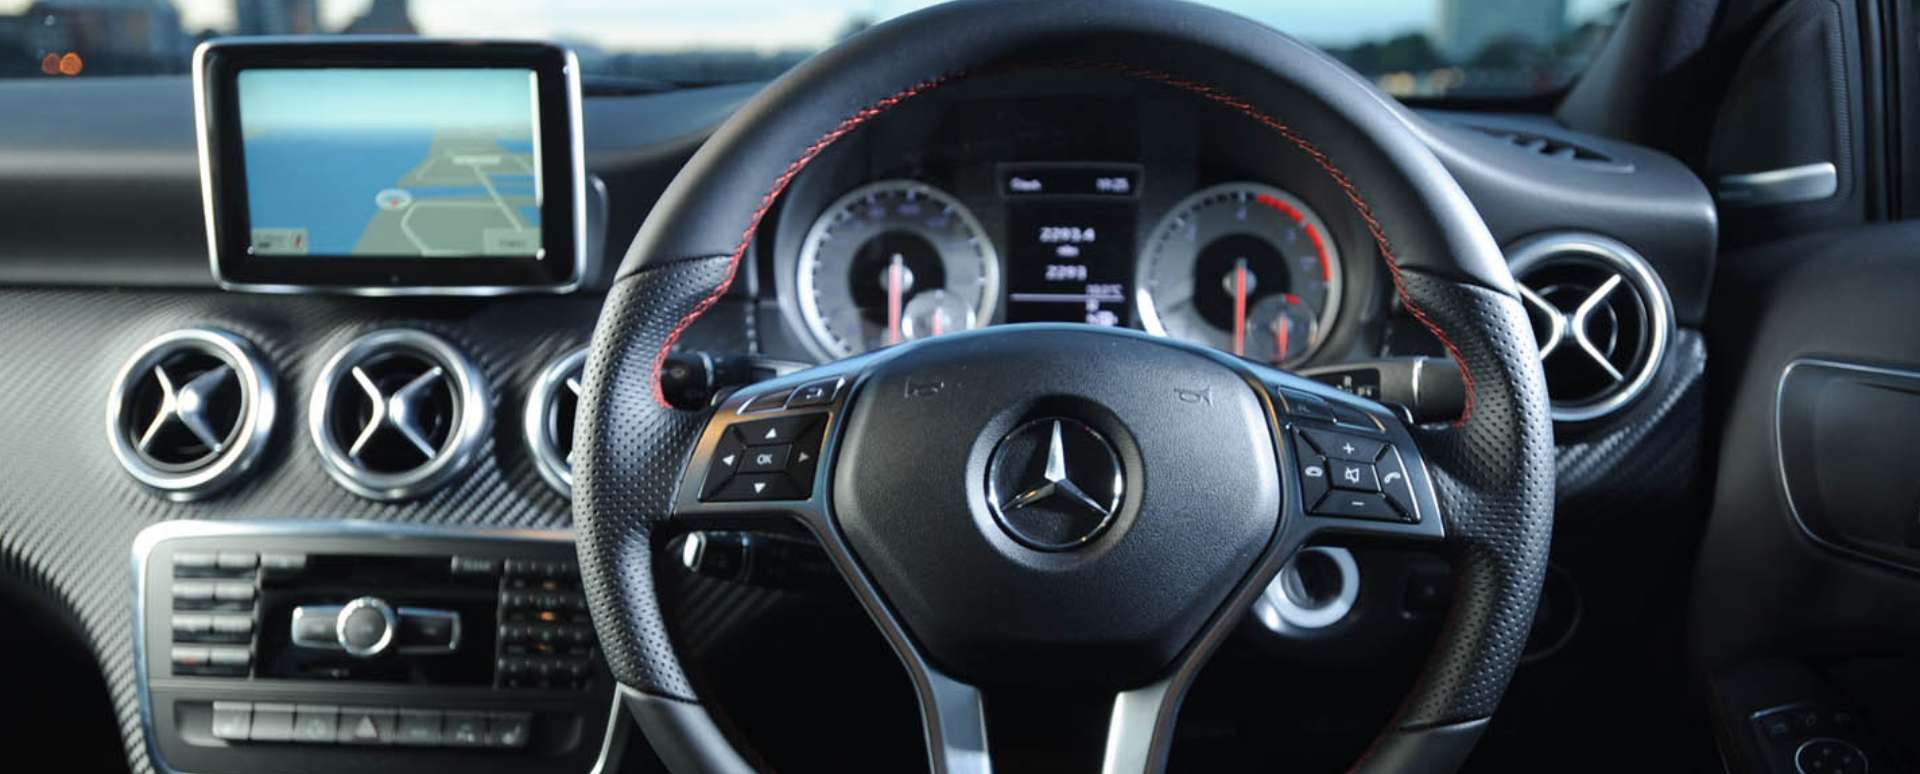 Mercedes-Benz COMAND Infotainment System